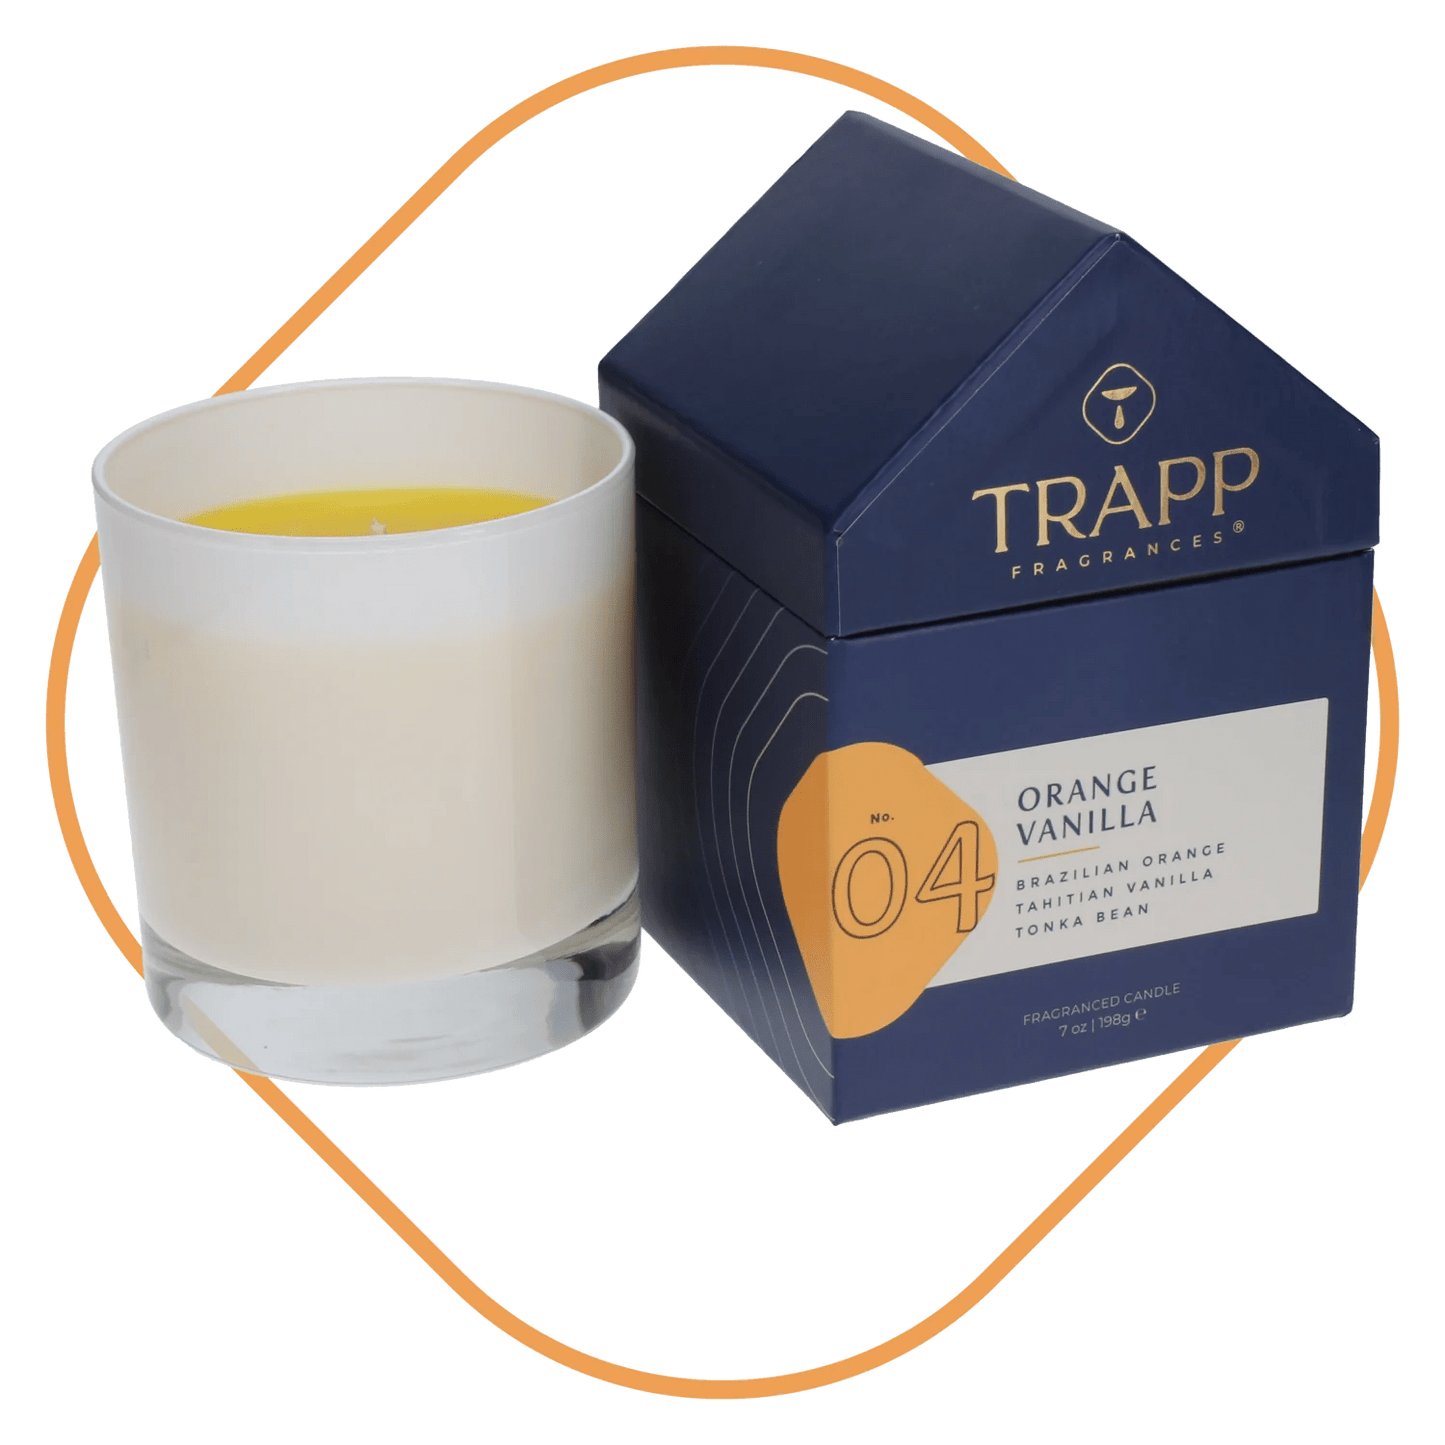 Trapp No. 04 Orange Vanilla Candle in Signature House Box